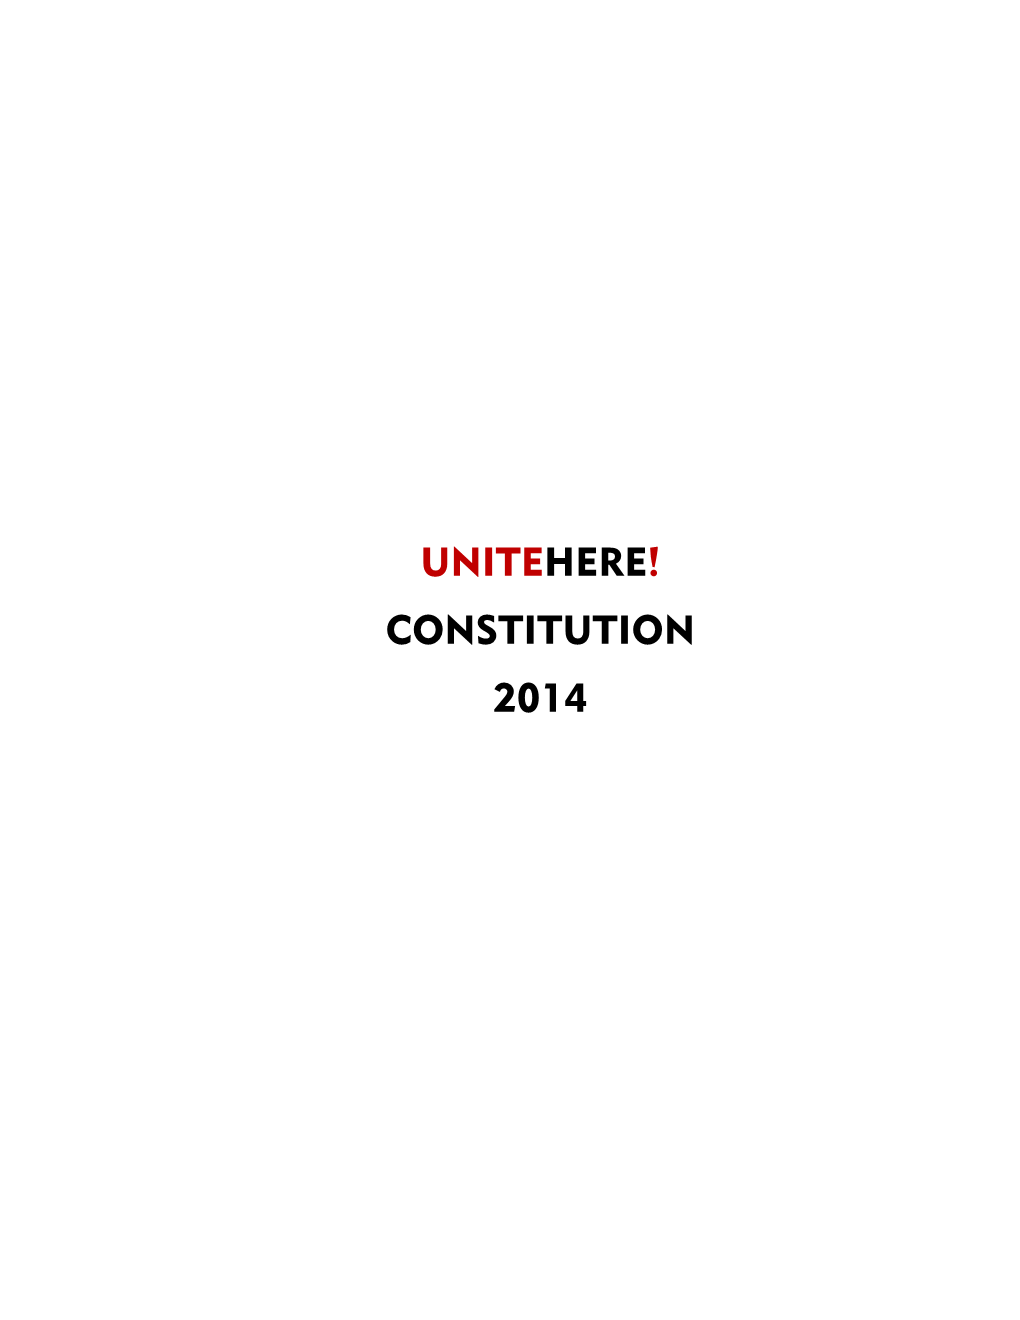 Unitehere! Constitution 2014 Foreword